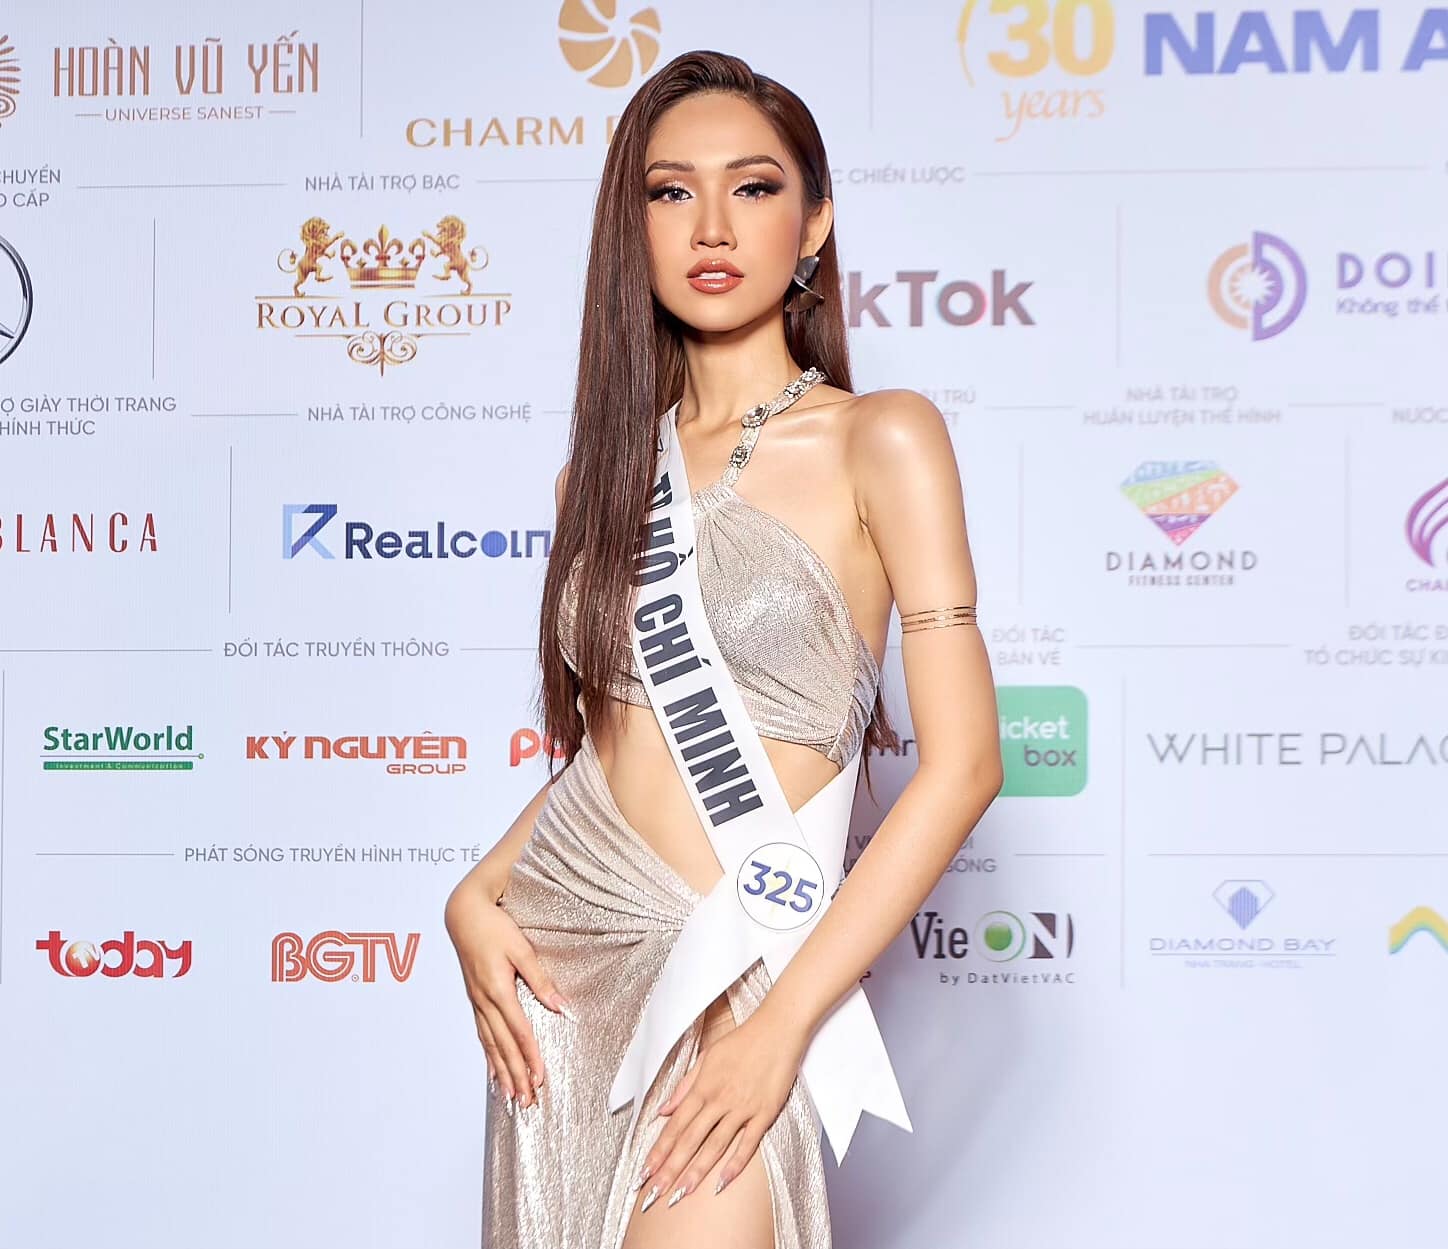 Đỗ Nhật Hà là mỹ nhân chuyển giới duy nhất vào chung kết Miss Universe Vietnam